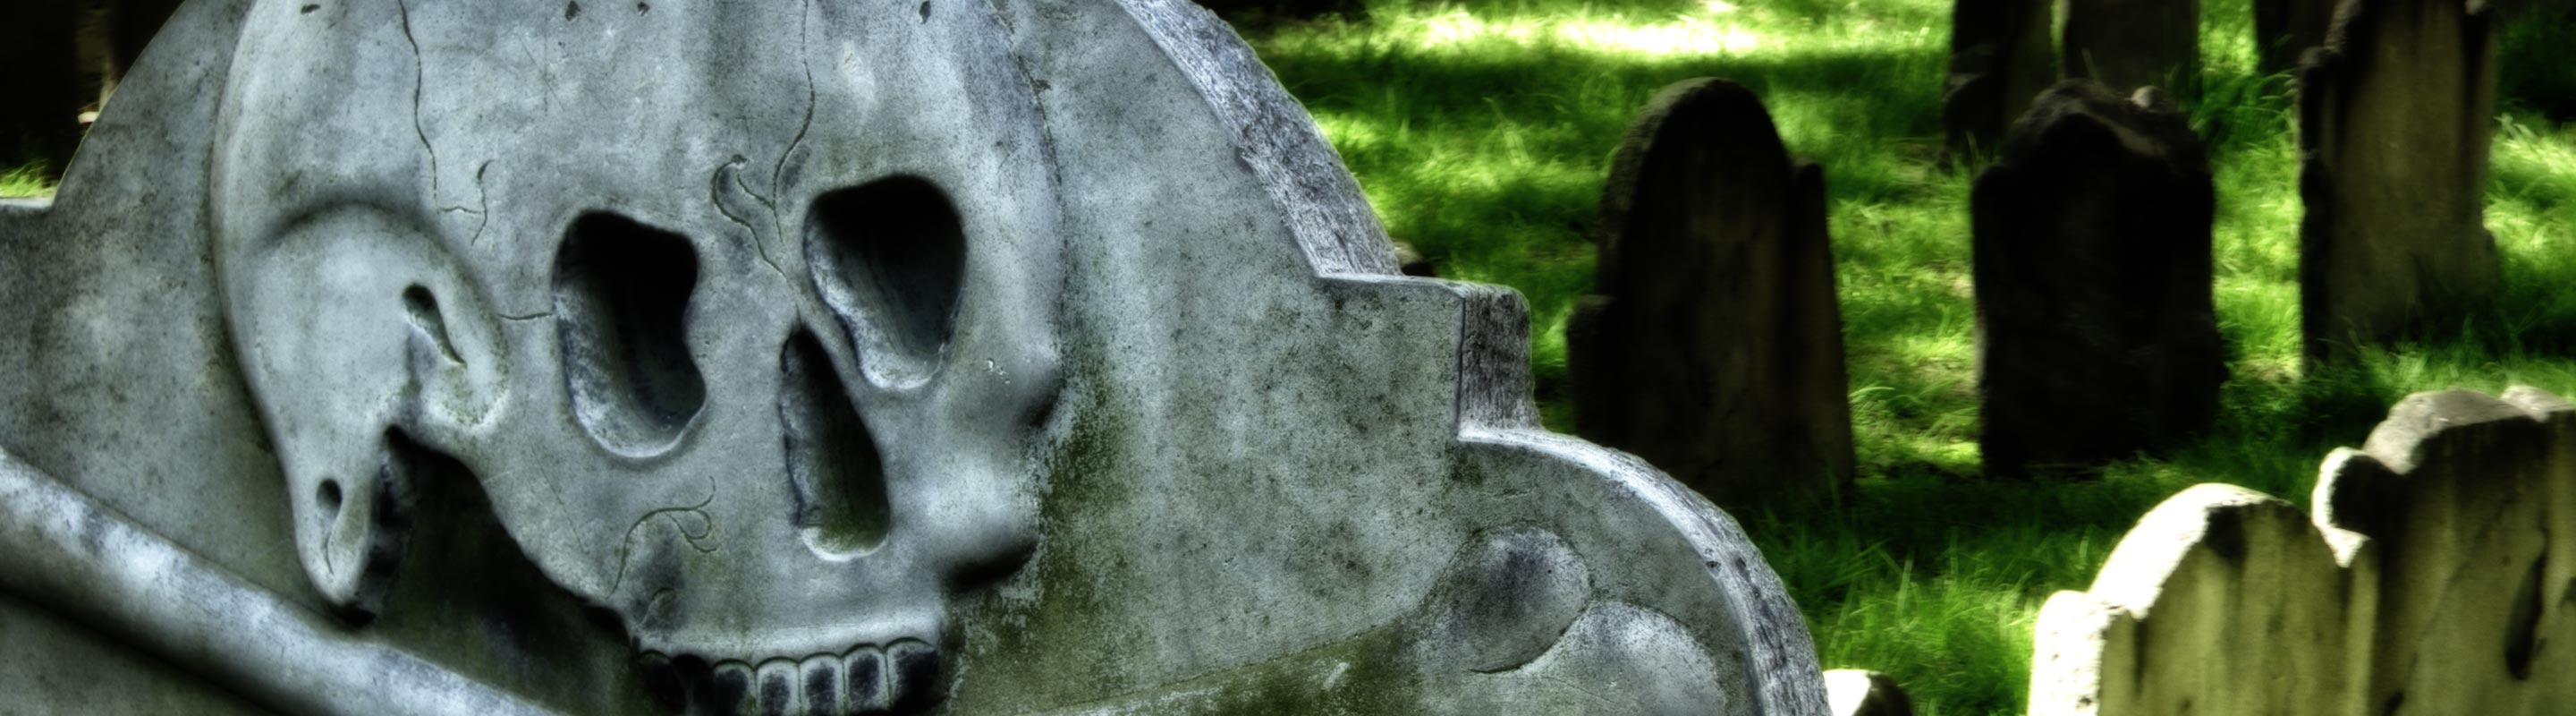 El Cementerio del Parke Granary: uno de los cementerios embrujados de Boston.